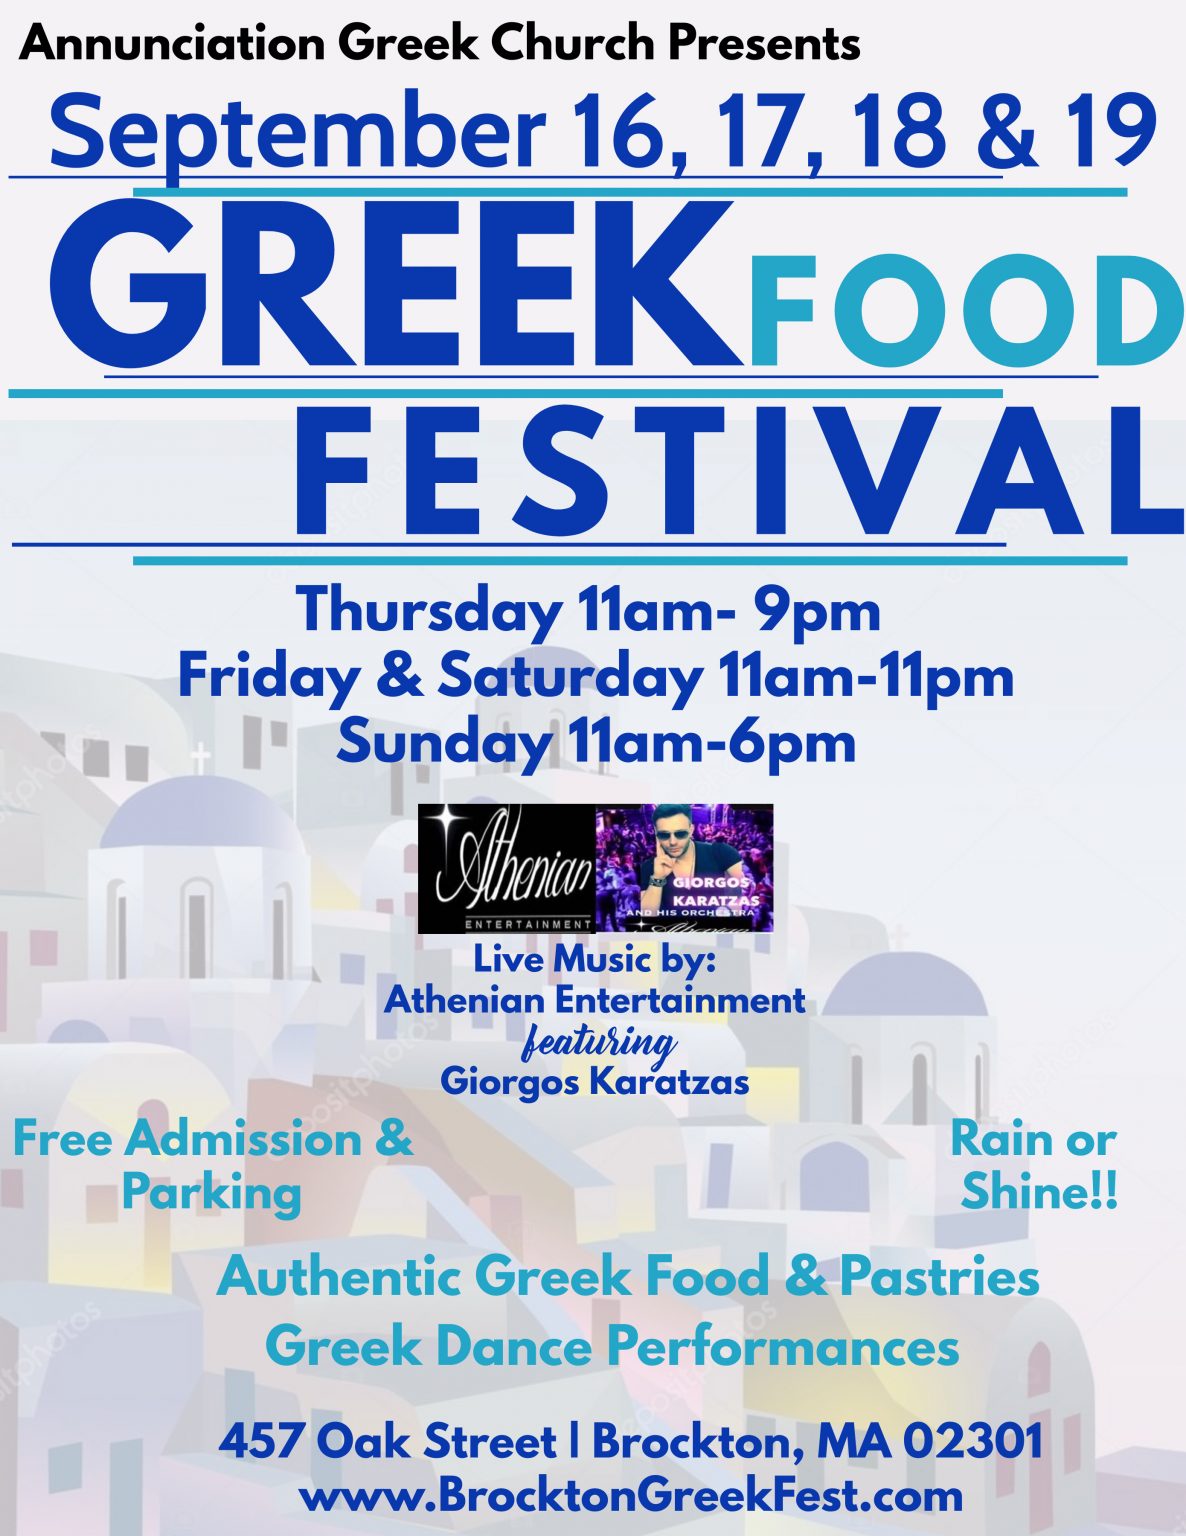 Brockton MA Greek Festival at Annunciation Greek Orthodox Church